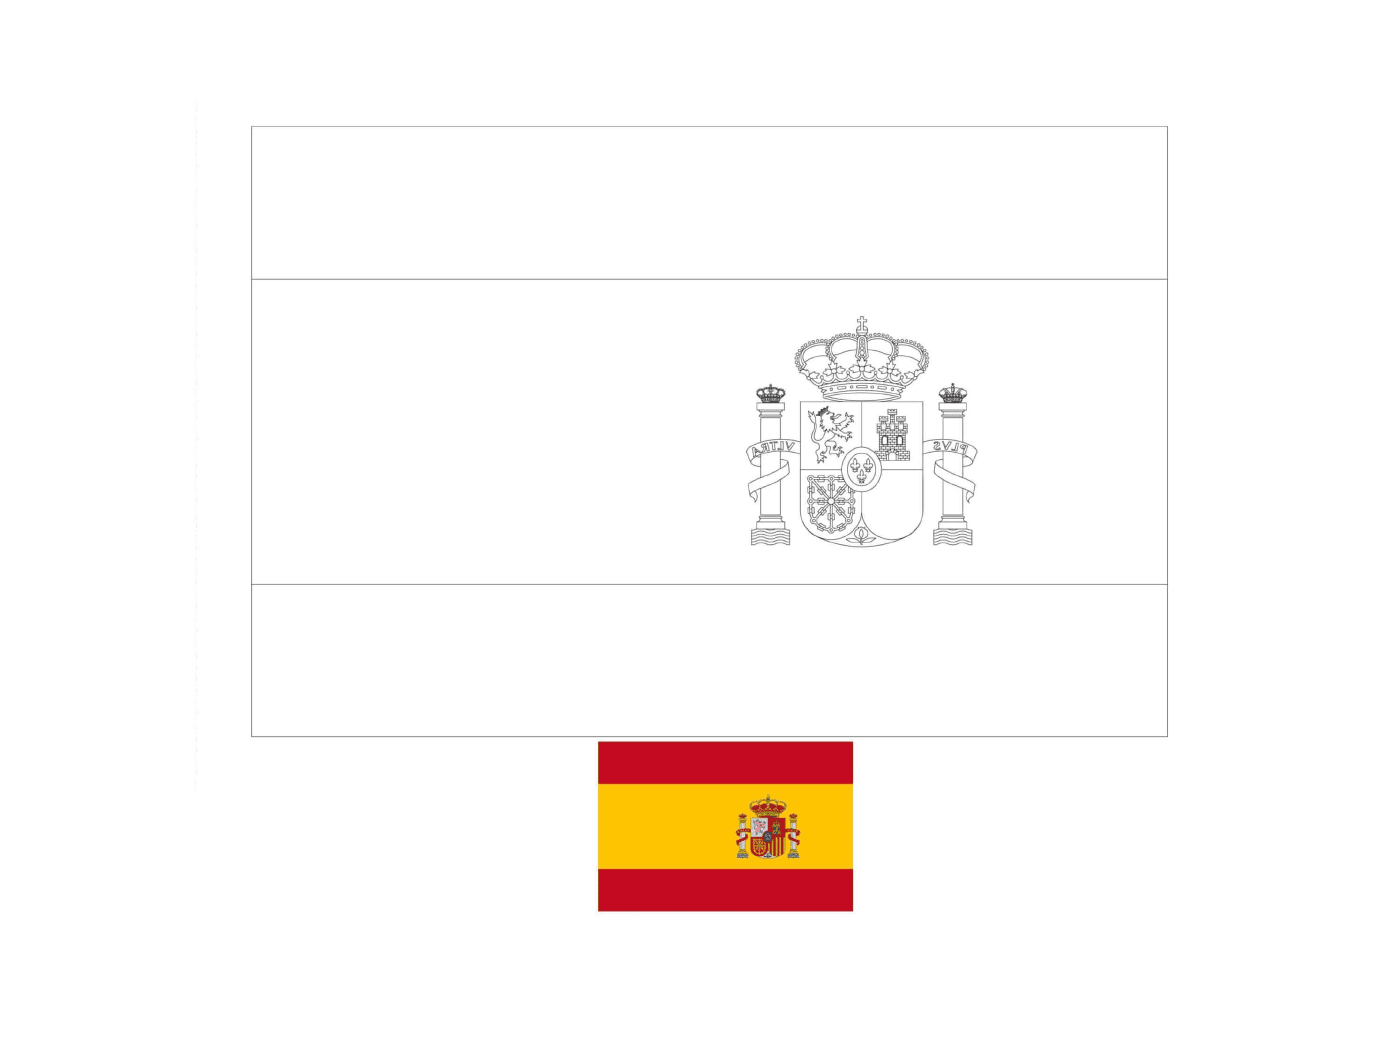  Флаг Испании, почерпнутый примерами 